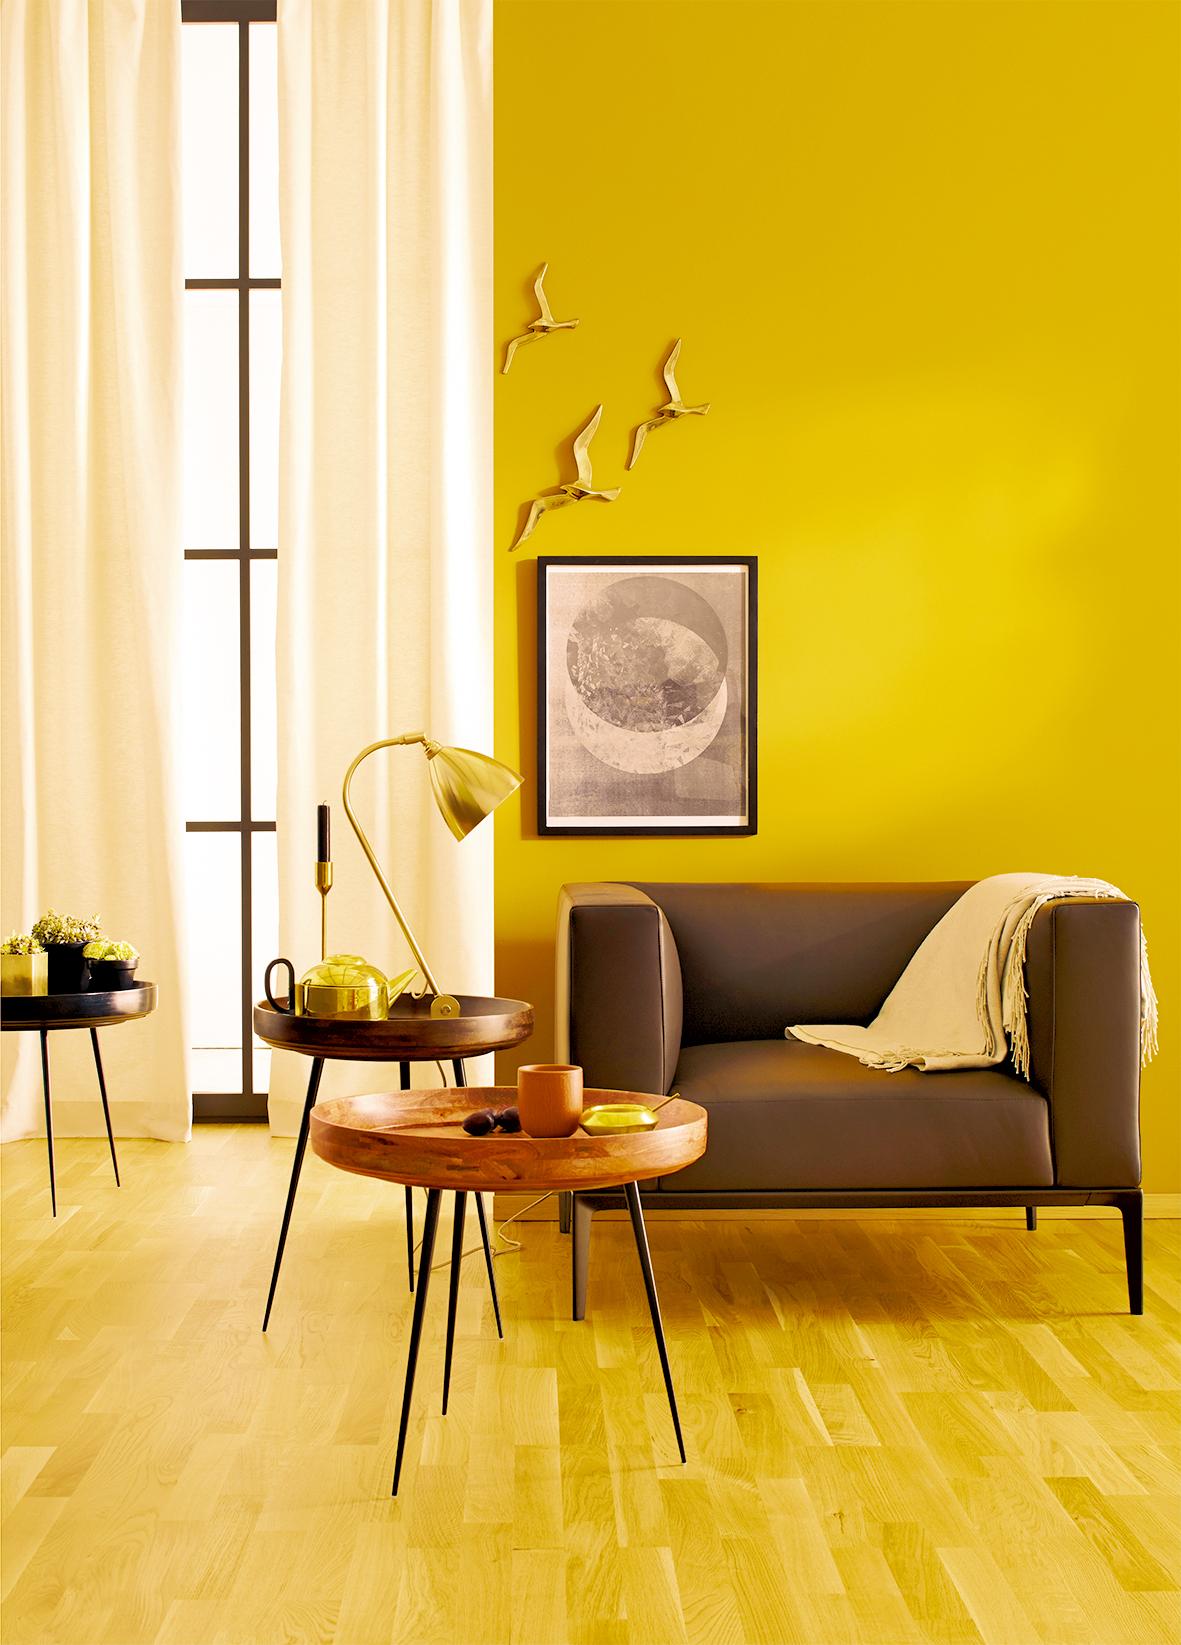 India, SCHÖNER WOHNEN-Trendfarbe #beistelltisch #wandfarbe #wohnzimmer #sessel #wandgestaltung #stehlampe #gardine #sofa #wanddeko #tisch #gelbewandfarbe #schönerwohnenfarbegelb